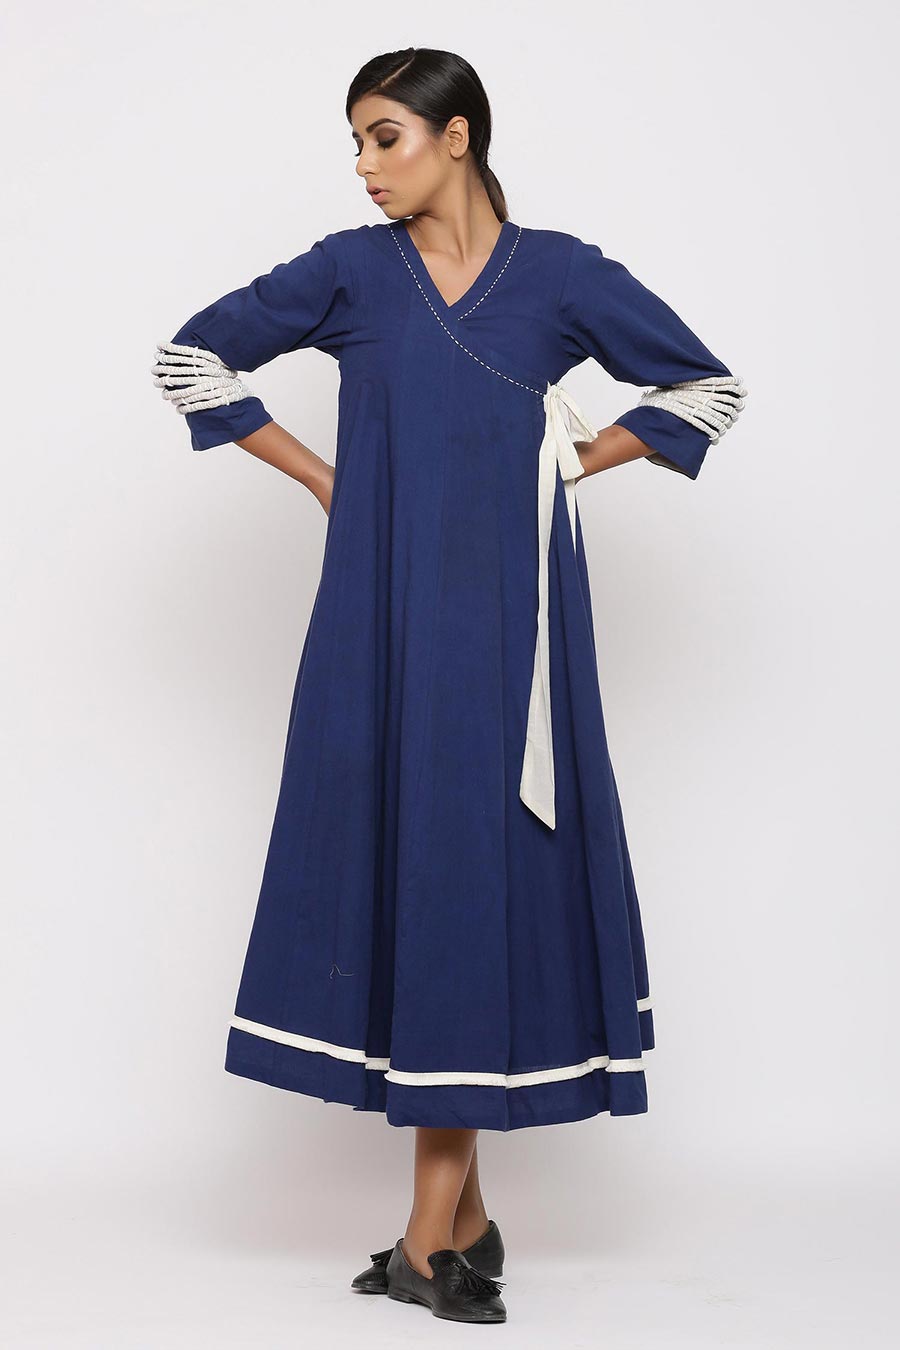 Zahara Blue Angrakha Tunic Dress